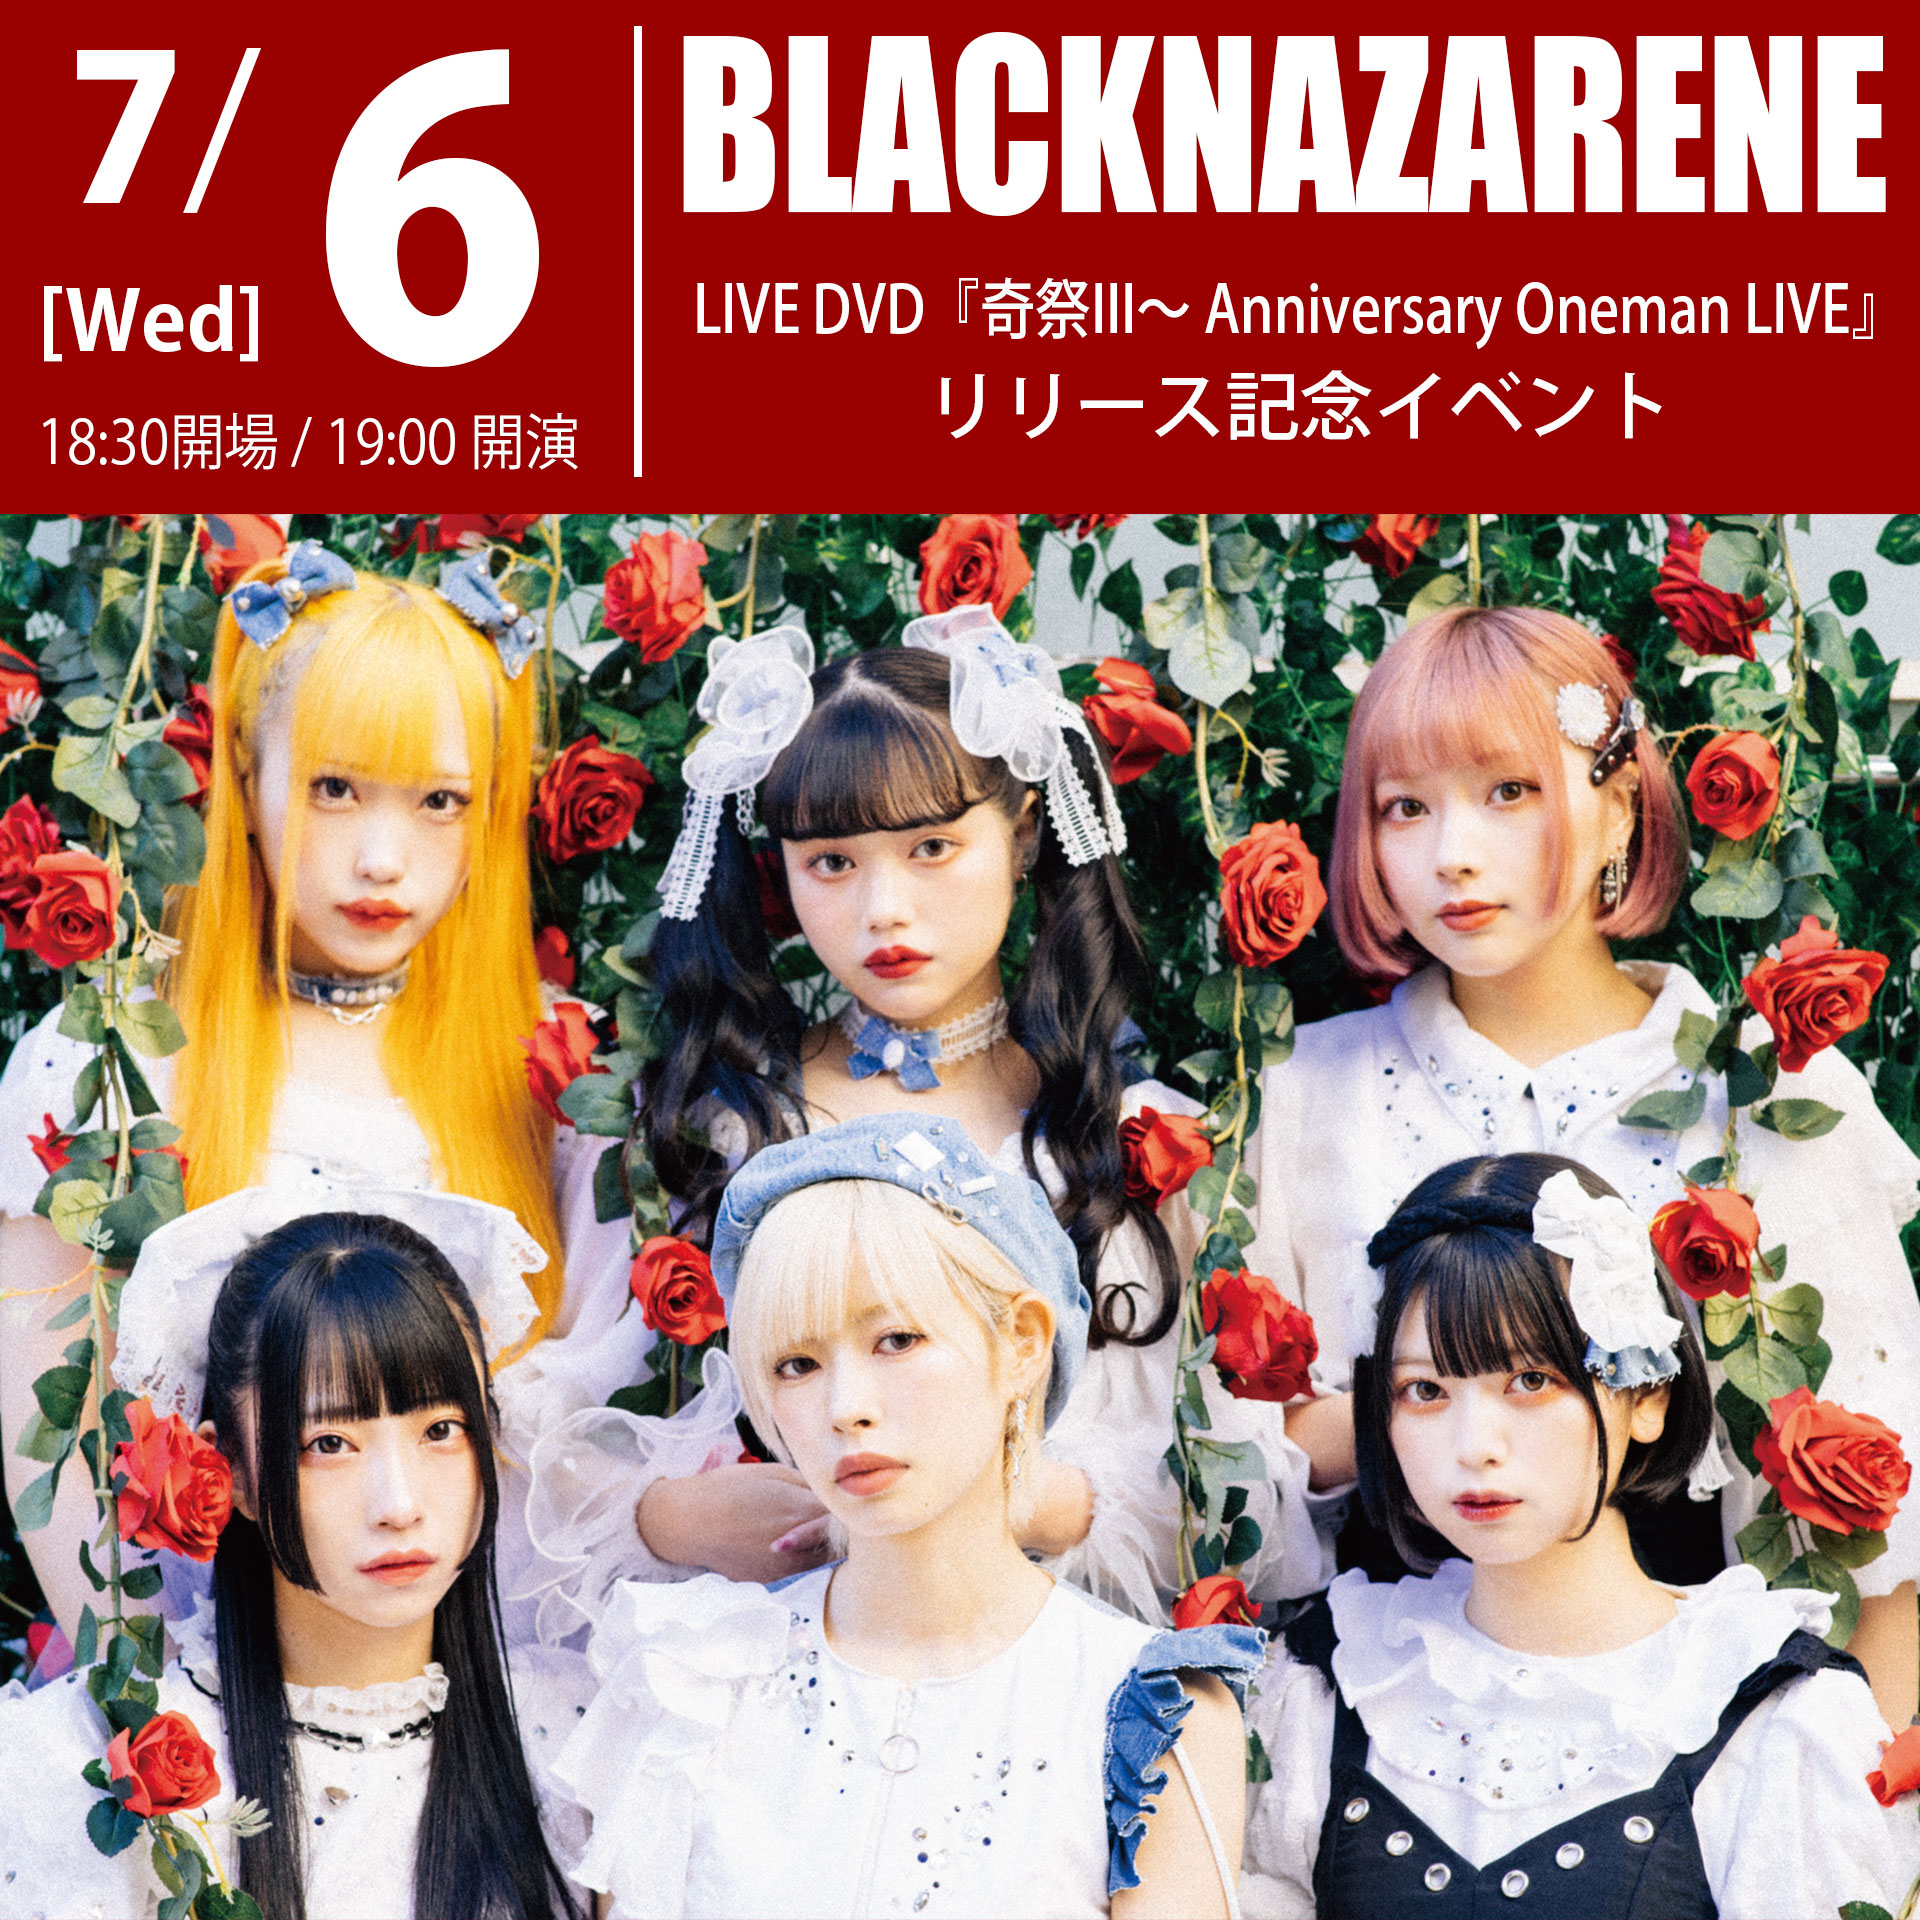 7/6（水）BLACKNAZARENE LIVE DVD『奇祭III～ Anniversary Oneman LIVE』リリース記念イベント